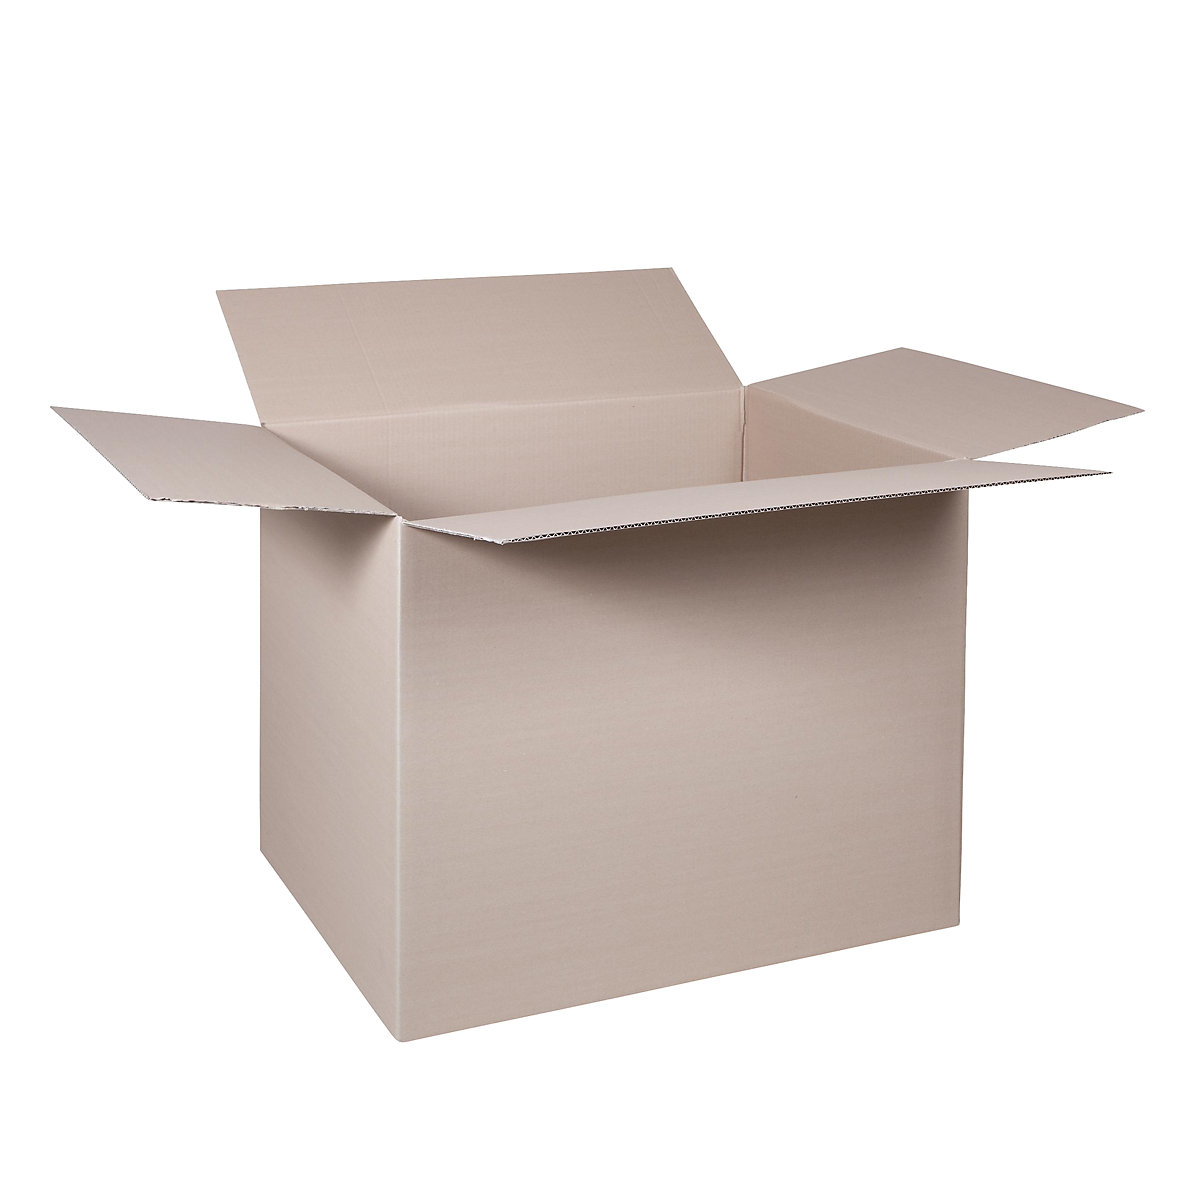 Cutie de carton pliantă, FEFCO 0201, cu 1 strat de carton ondulat, dimensiuni interioare 600 x 400 x 400 mm, amb. 100 buc.-29